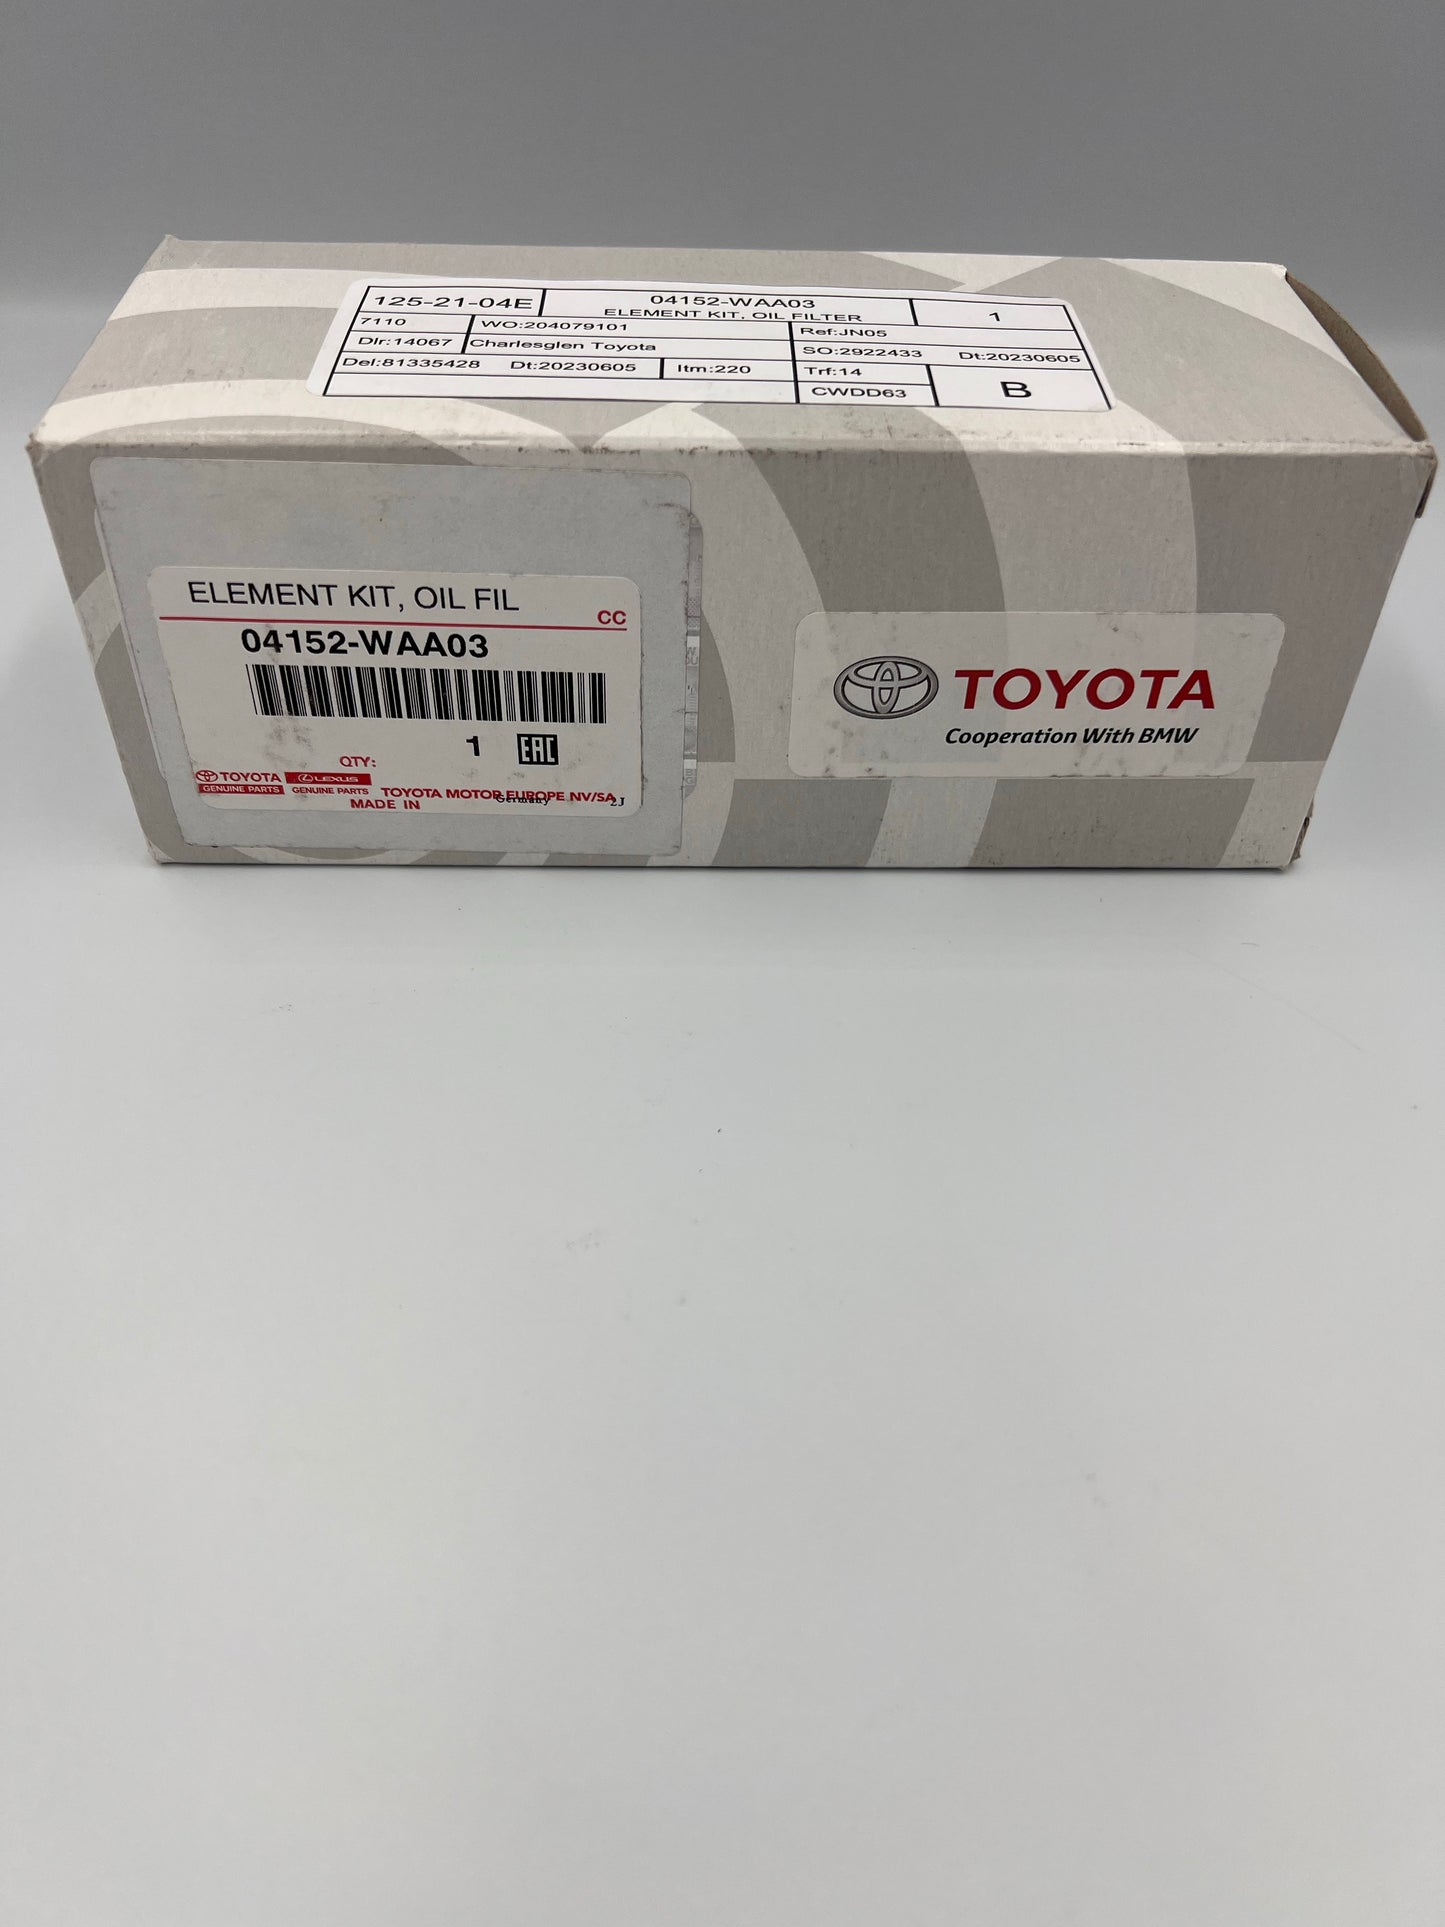 Toyota Oil filter 04152-WAA03